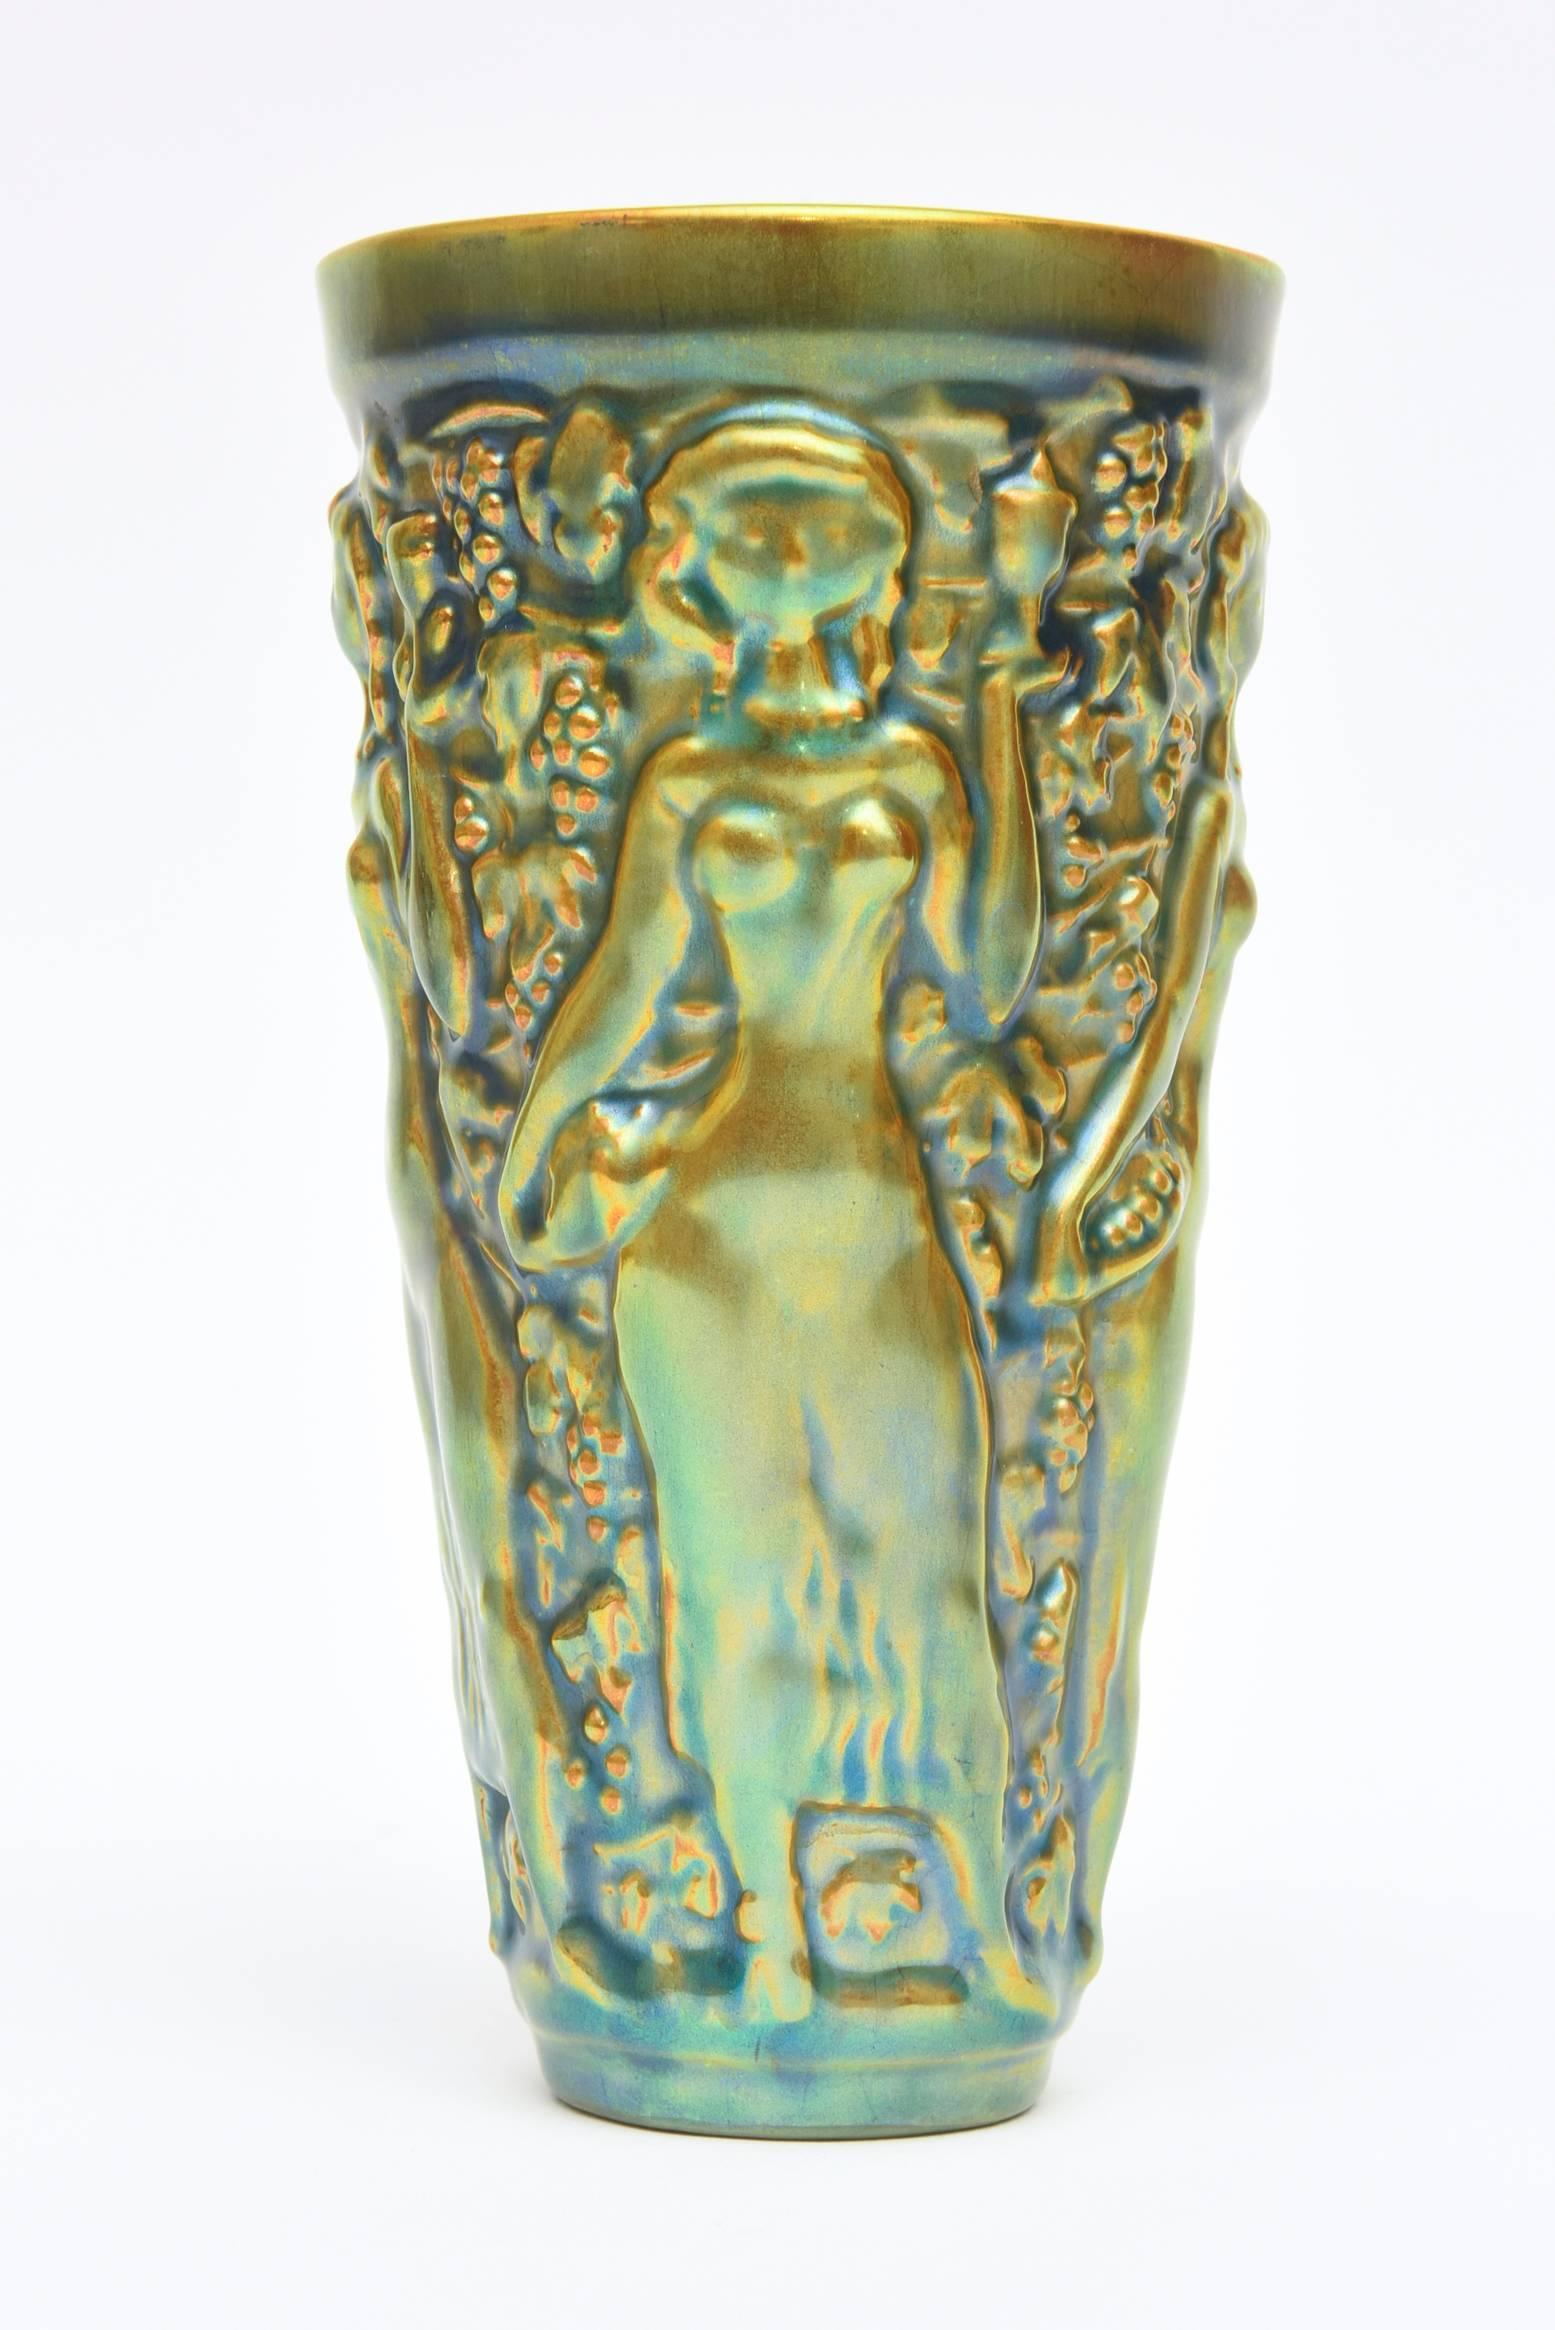 Diese Vase aus glasierter Keramik ist ein Werk des ungarischen Künstlers Zsolnay, das sich durch eine besondere Textur und erhabene Formen auszeichnet. Es ist eine herrliche Kombination von Farbe der eleganten sinnlichen Akt Reliefs in dieser